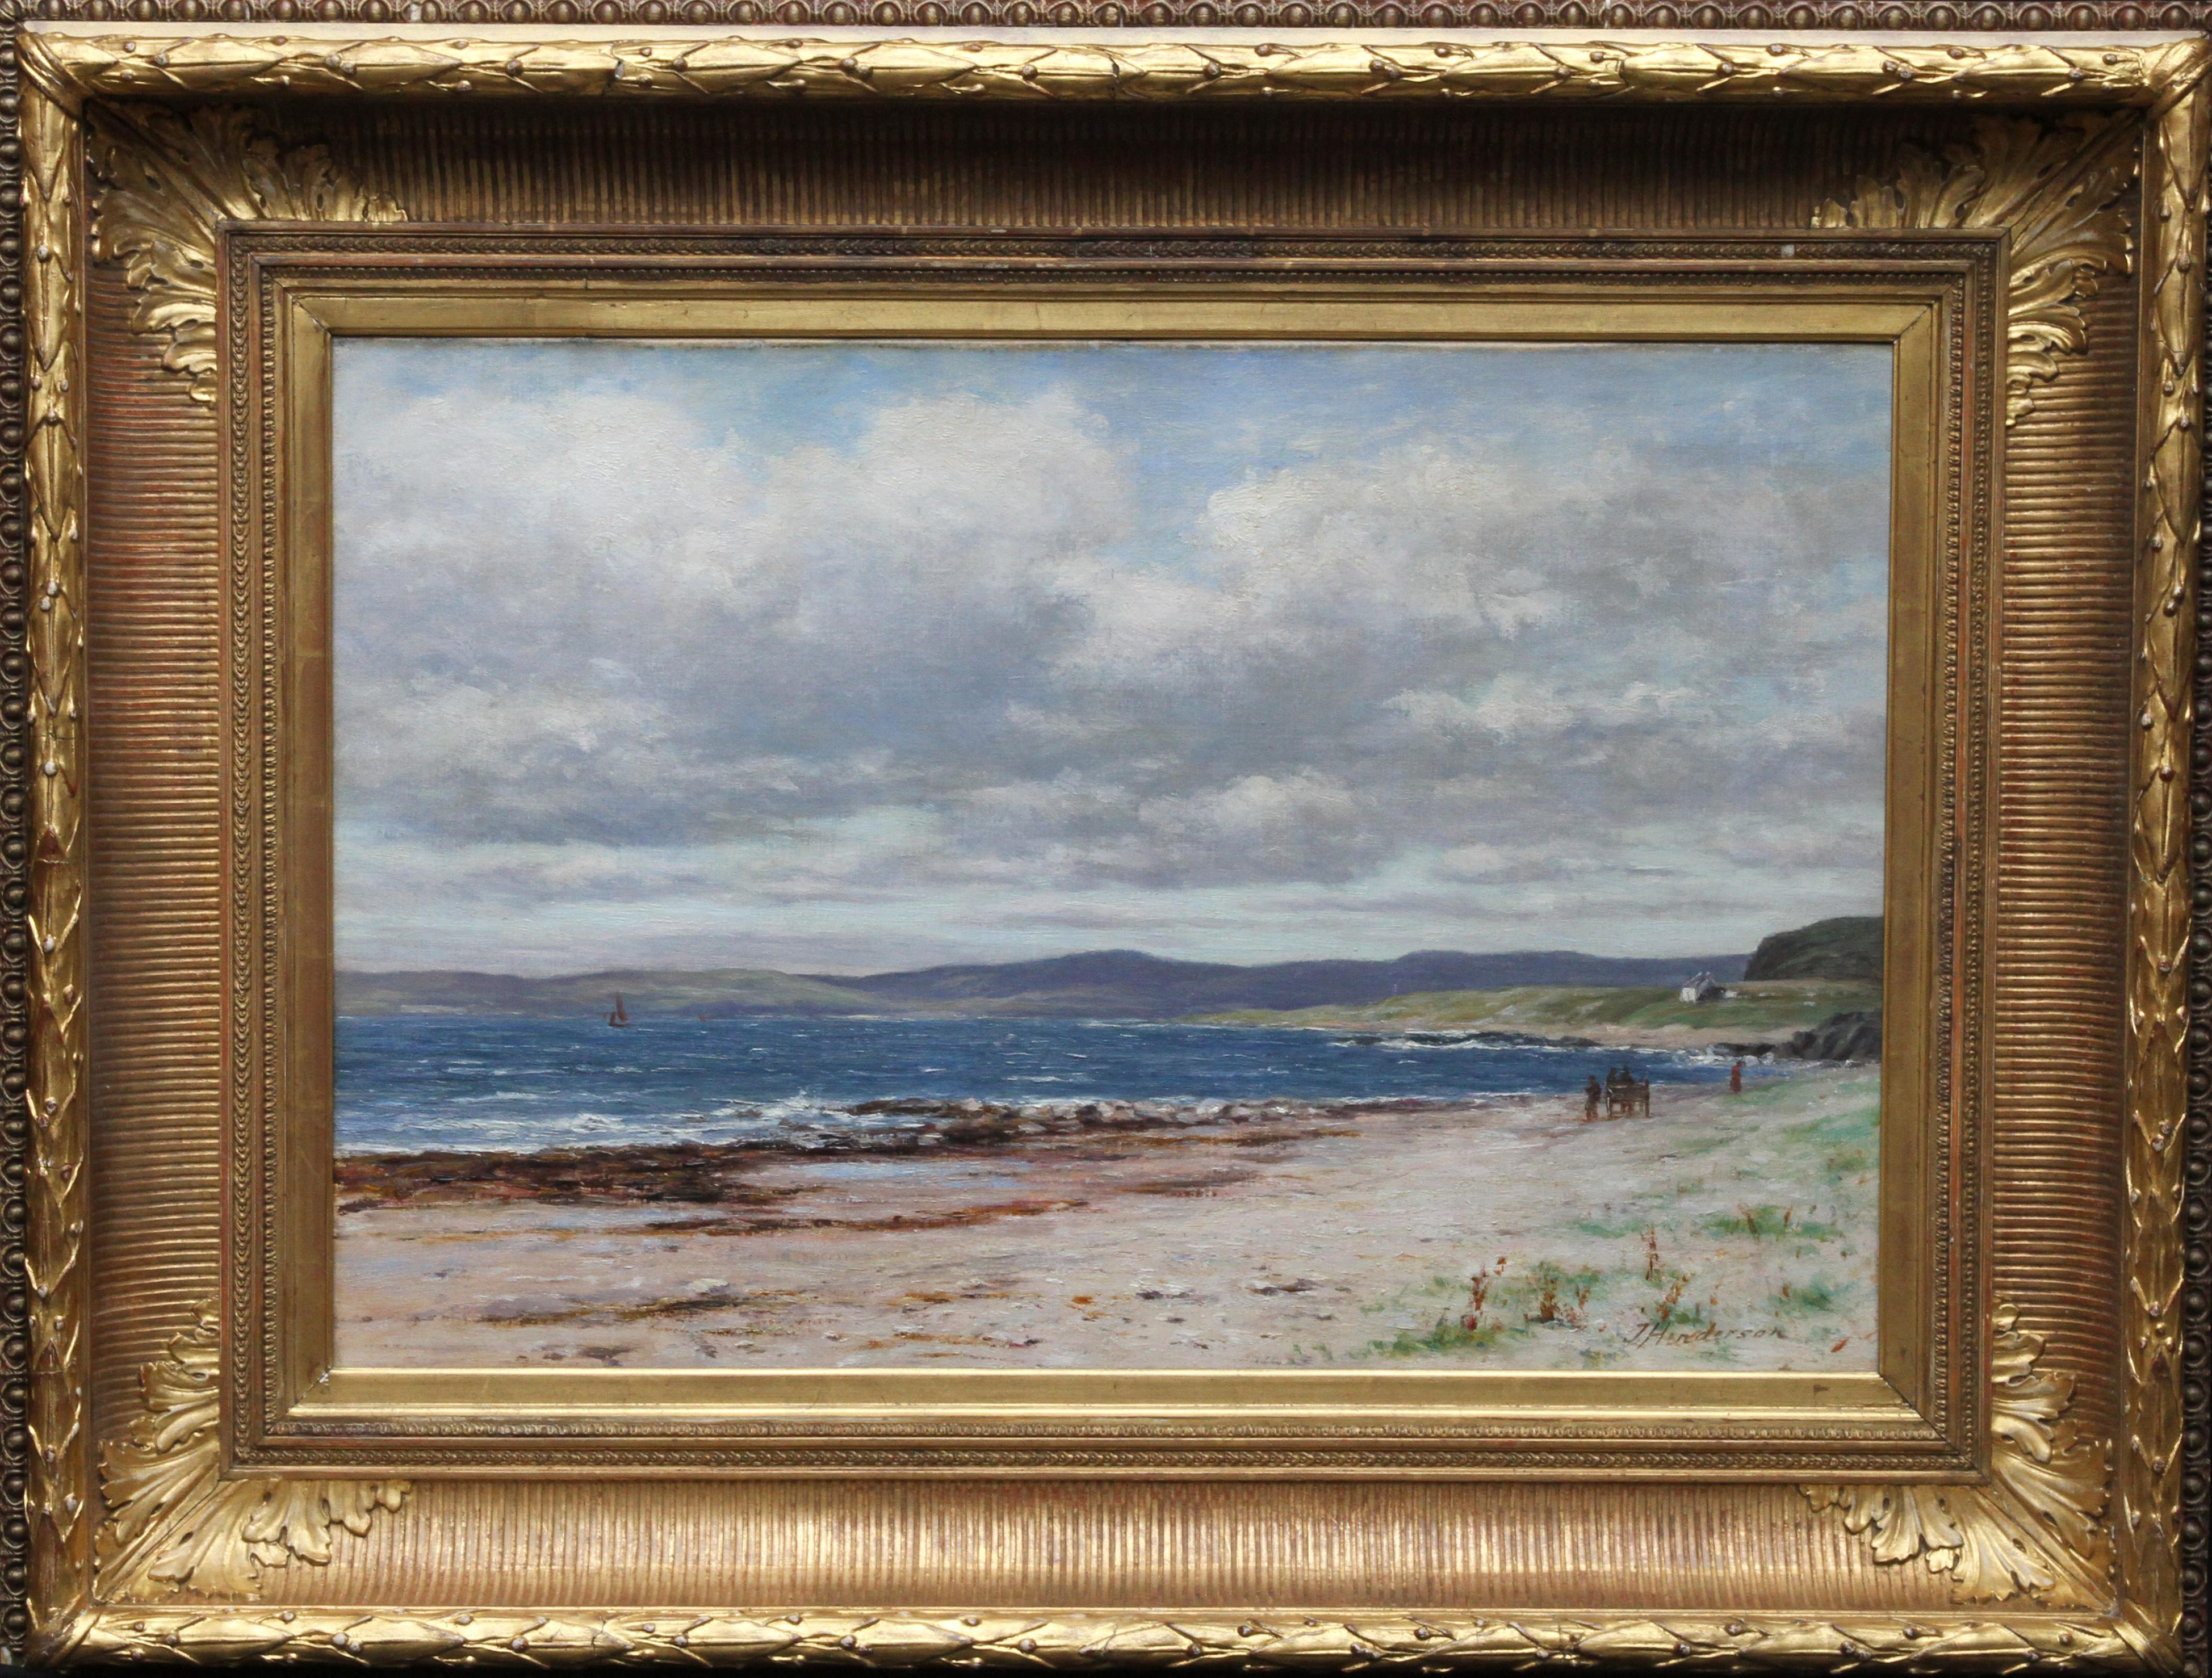 Landscape Painting Joseph Henderson R.S.W - Kintyre depuis Arran - Art �écossais Peinture à l'huile impressionniste du 19ème siècle